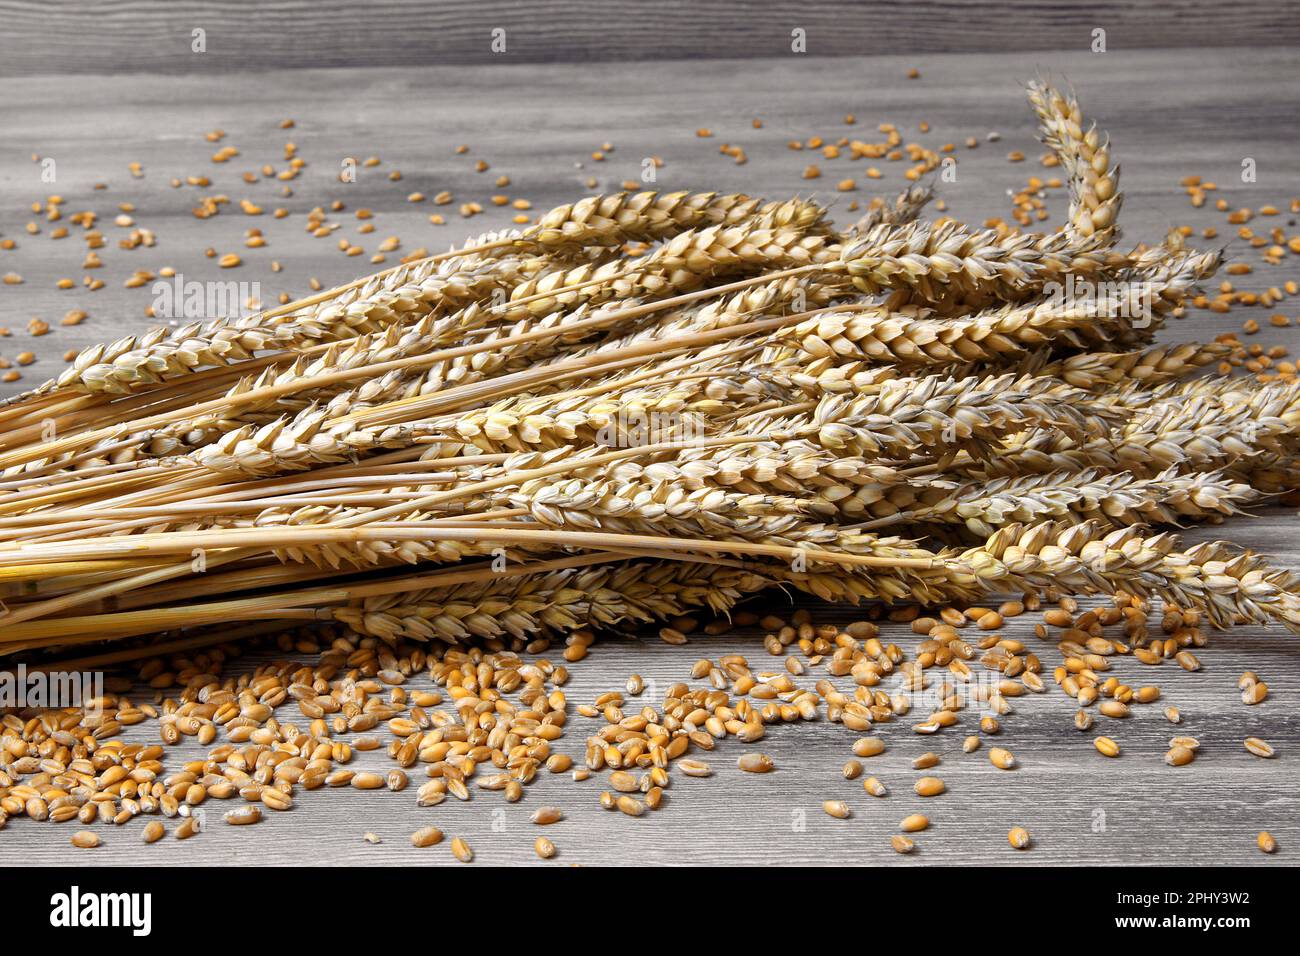 bread wheat, cultivated wheat (Triticum aestivum), bundel of wheat Stock Photo